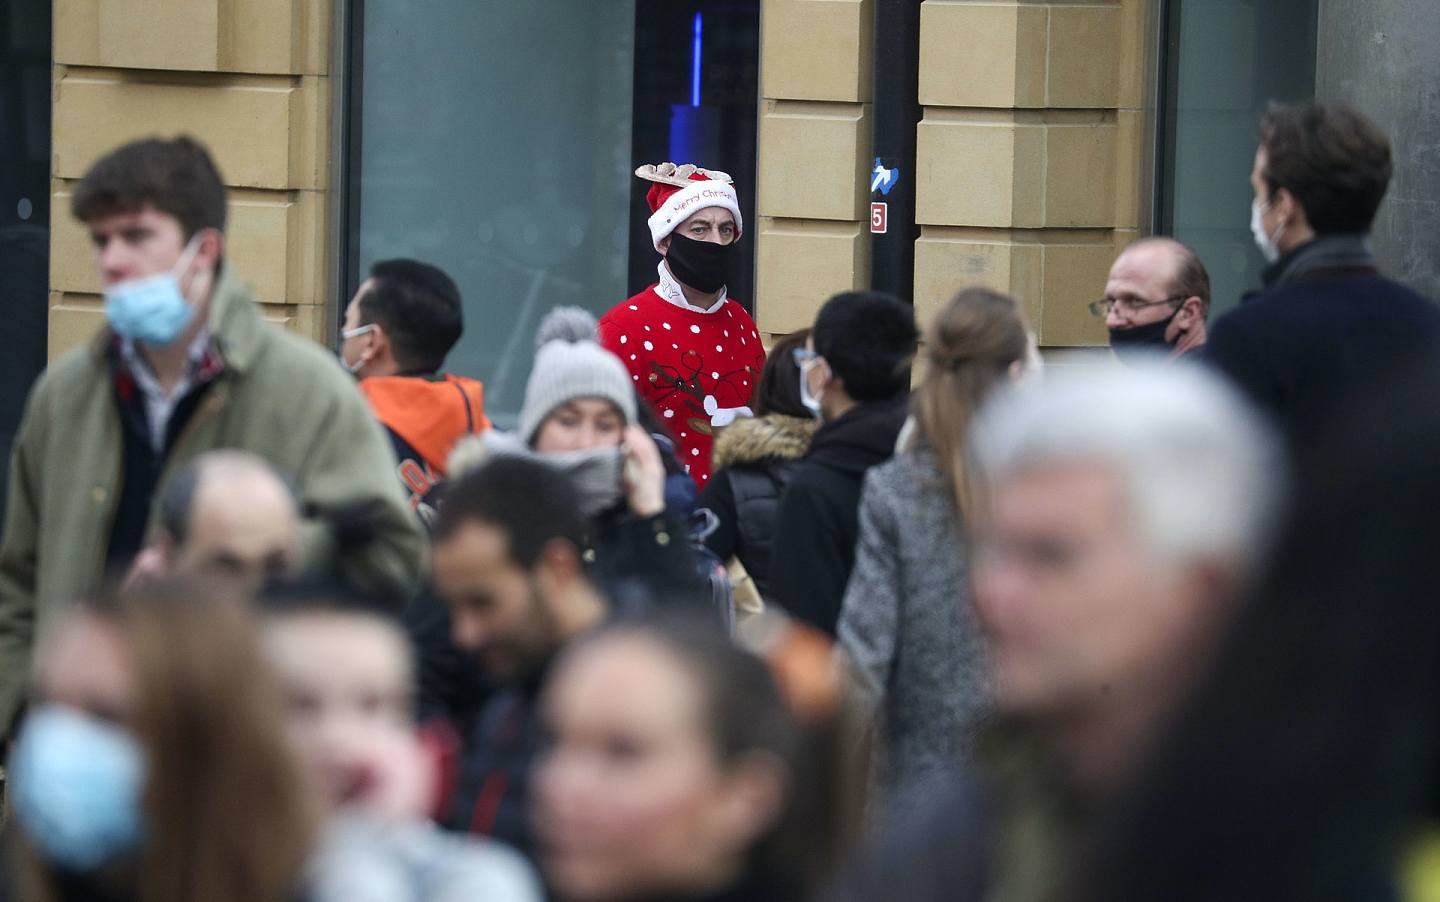 2020年12月20日星期日英国的圣诞购物者。 数以百万计的英国人都知道他们必须取消他们的圣诞聚会和假日购物旅行。 英国首相鲍里斯·约翰逊(Boris Johnson)周六表示，伦敦和英格兰南部大部分地区的假日聚会不能继续进行，非必要商店必须关闭。 (史蒂夫·帕森斯/美联社PA)